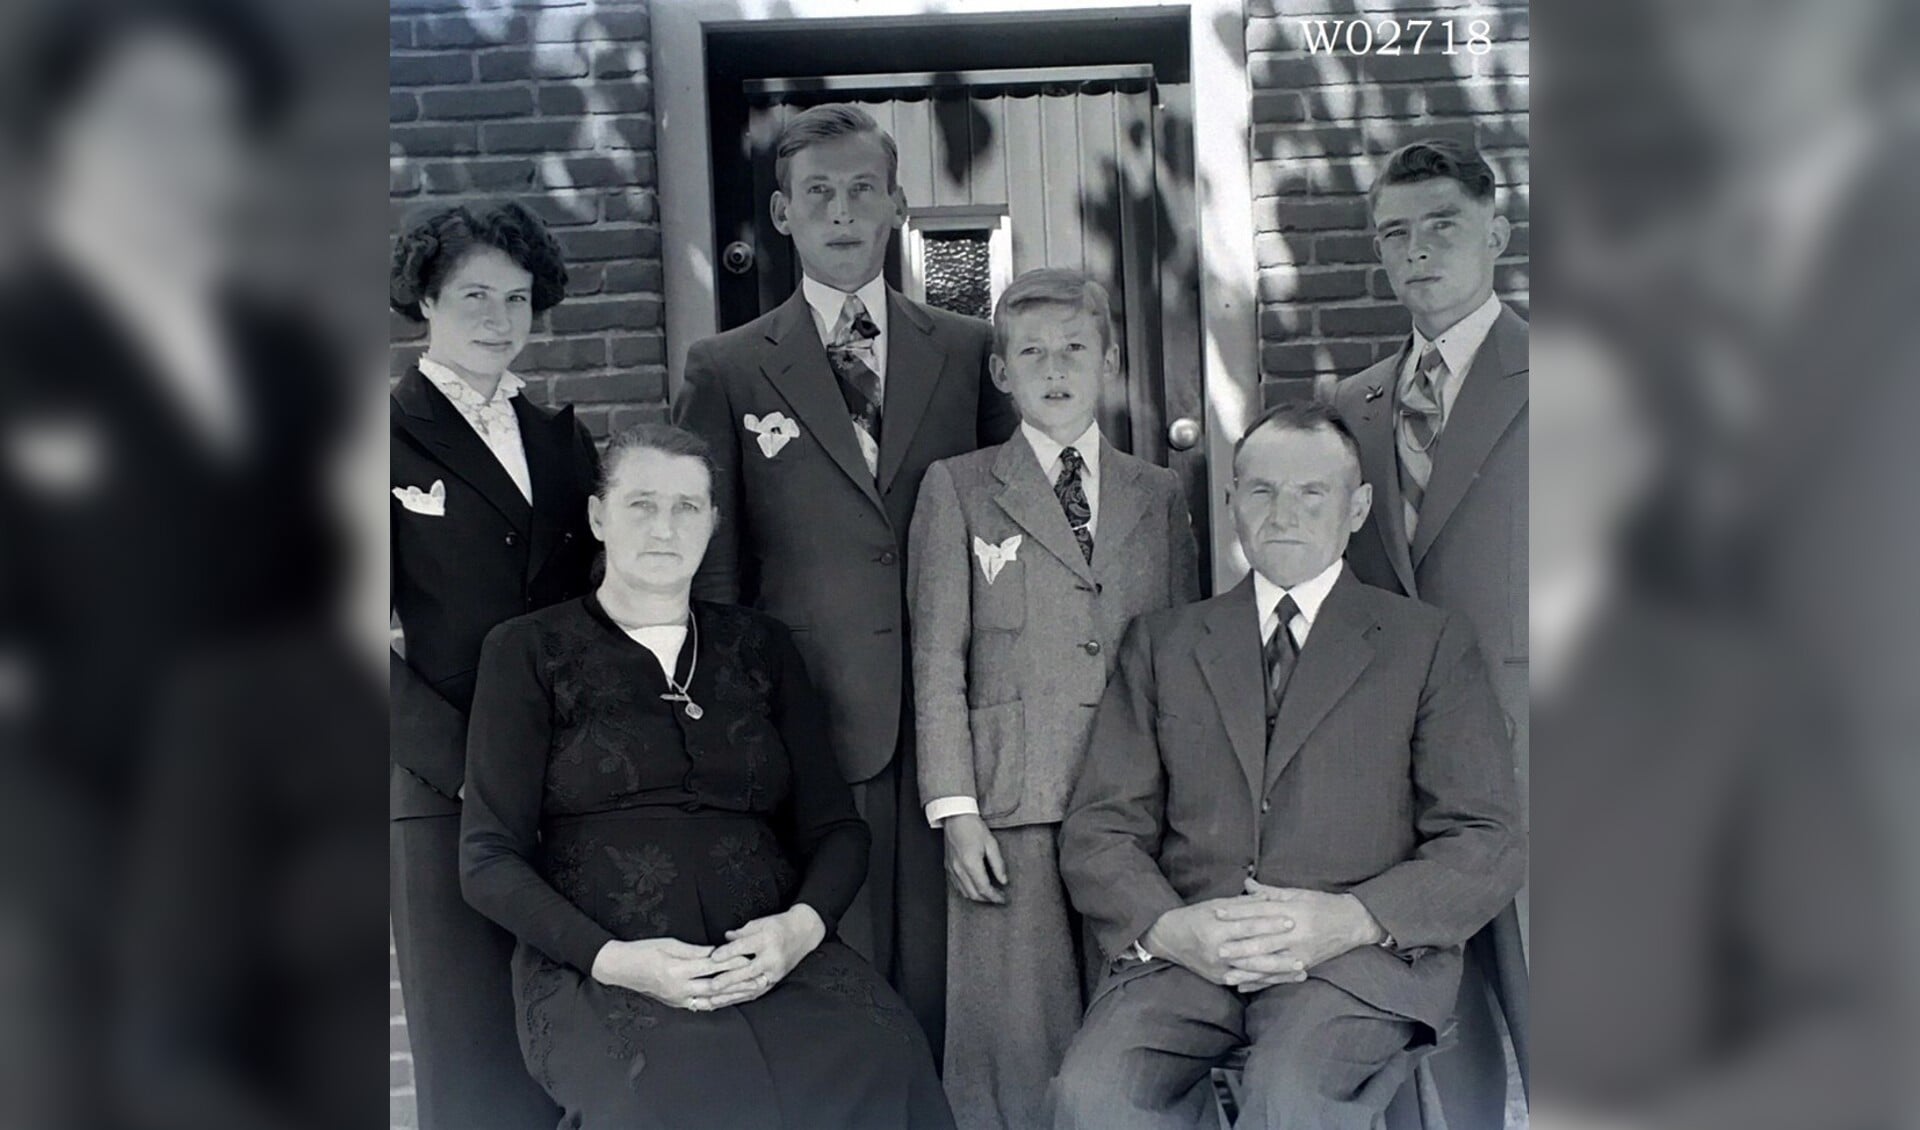 Wie weet de namen van de familieleden op de foto? 